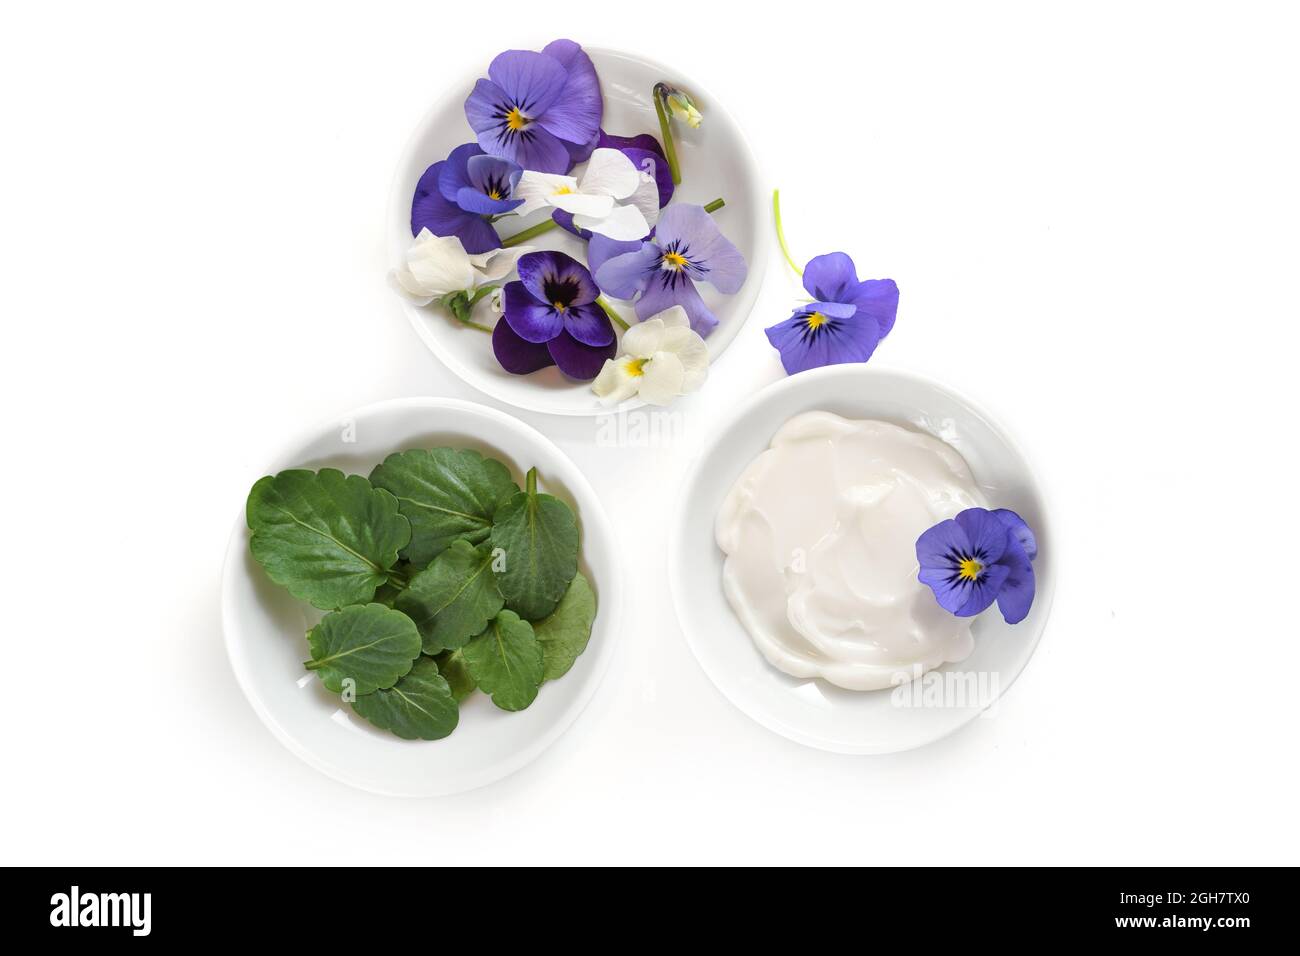 Petits bols avec des fleurs violettes ou violettes, des feuilles et des produits cosmétiques naturels onguent isolés avec des ombres sur un fond blanc, espace de copie, haut angle vi Banque D'Images